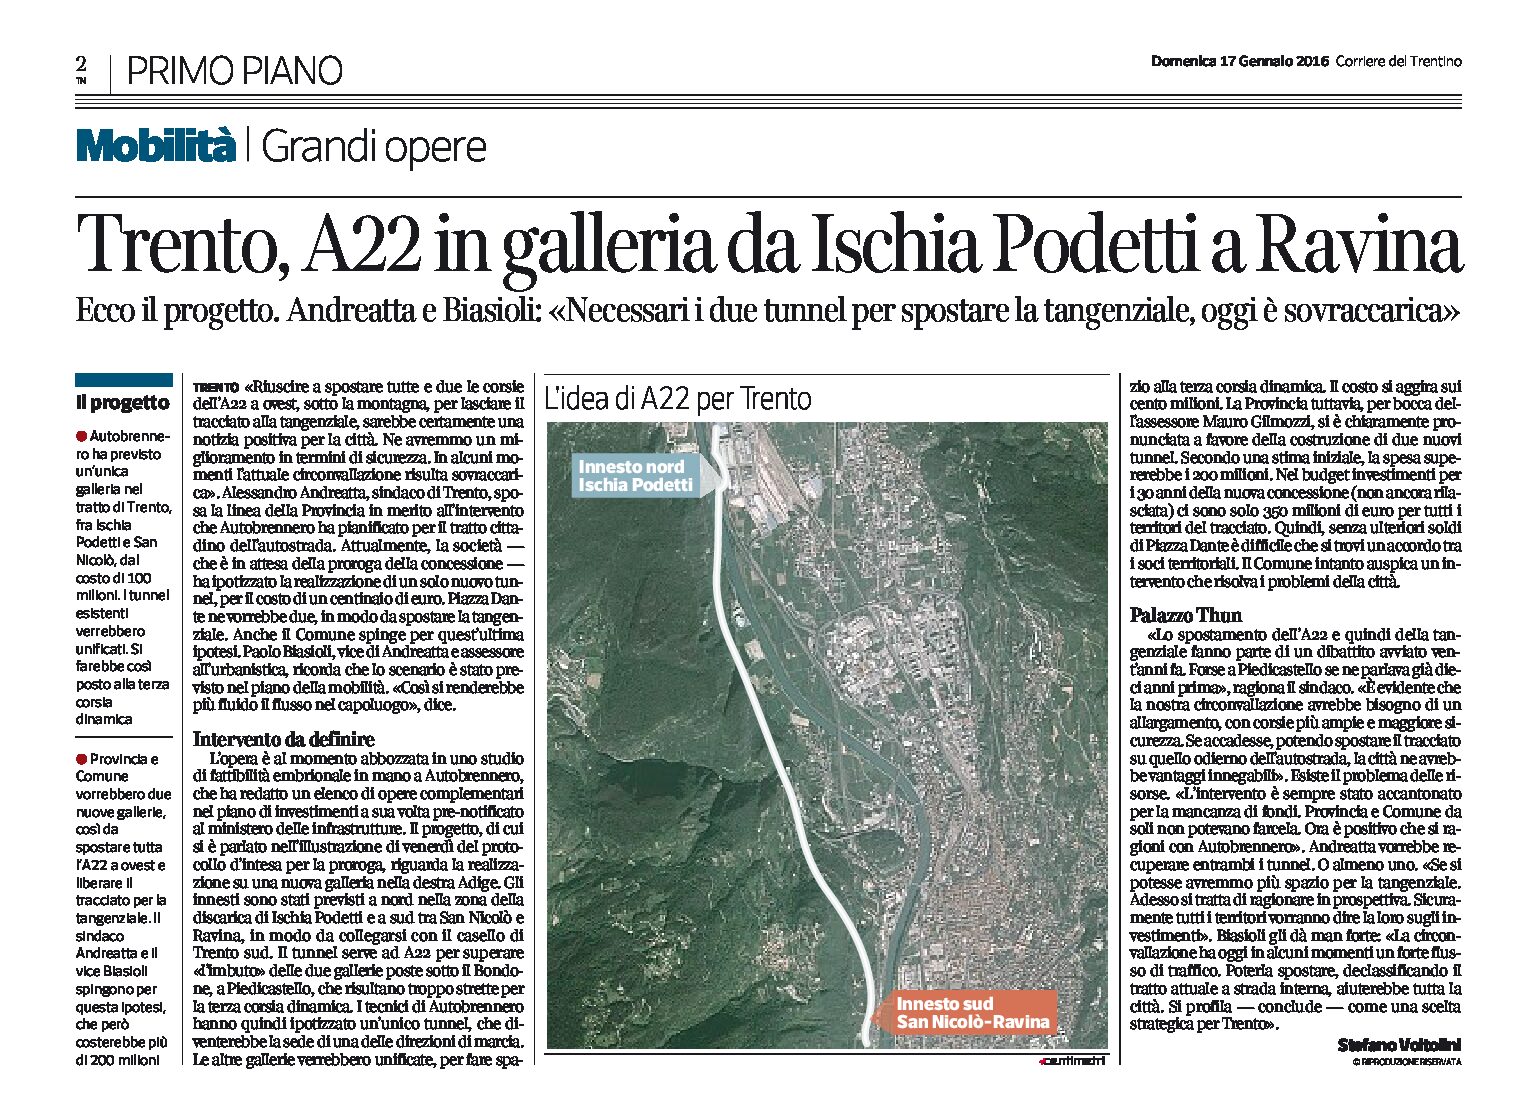 Trento: A22 in galleria da Ischia Podetti a Ravina